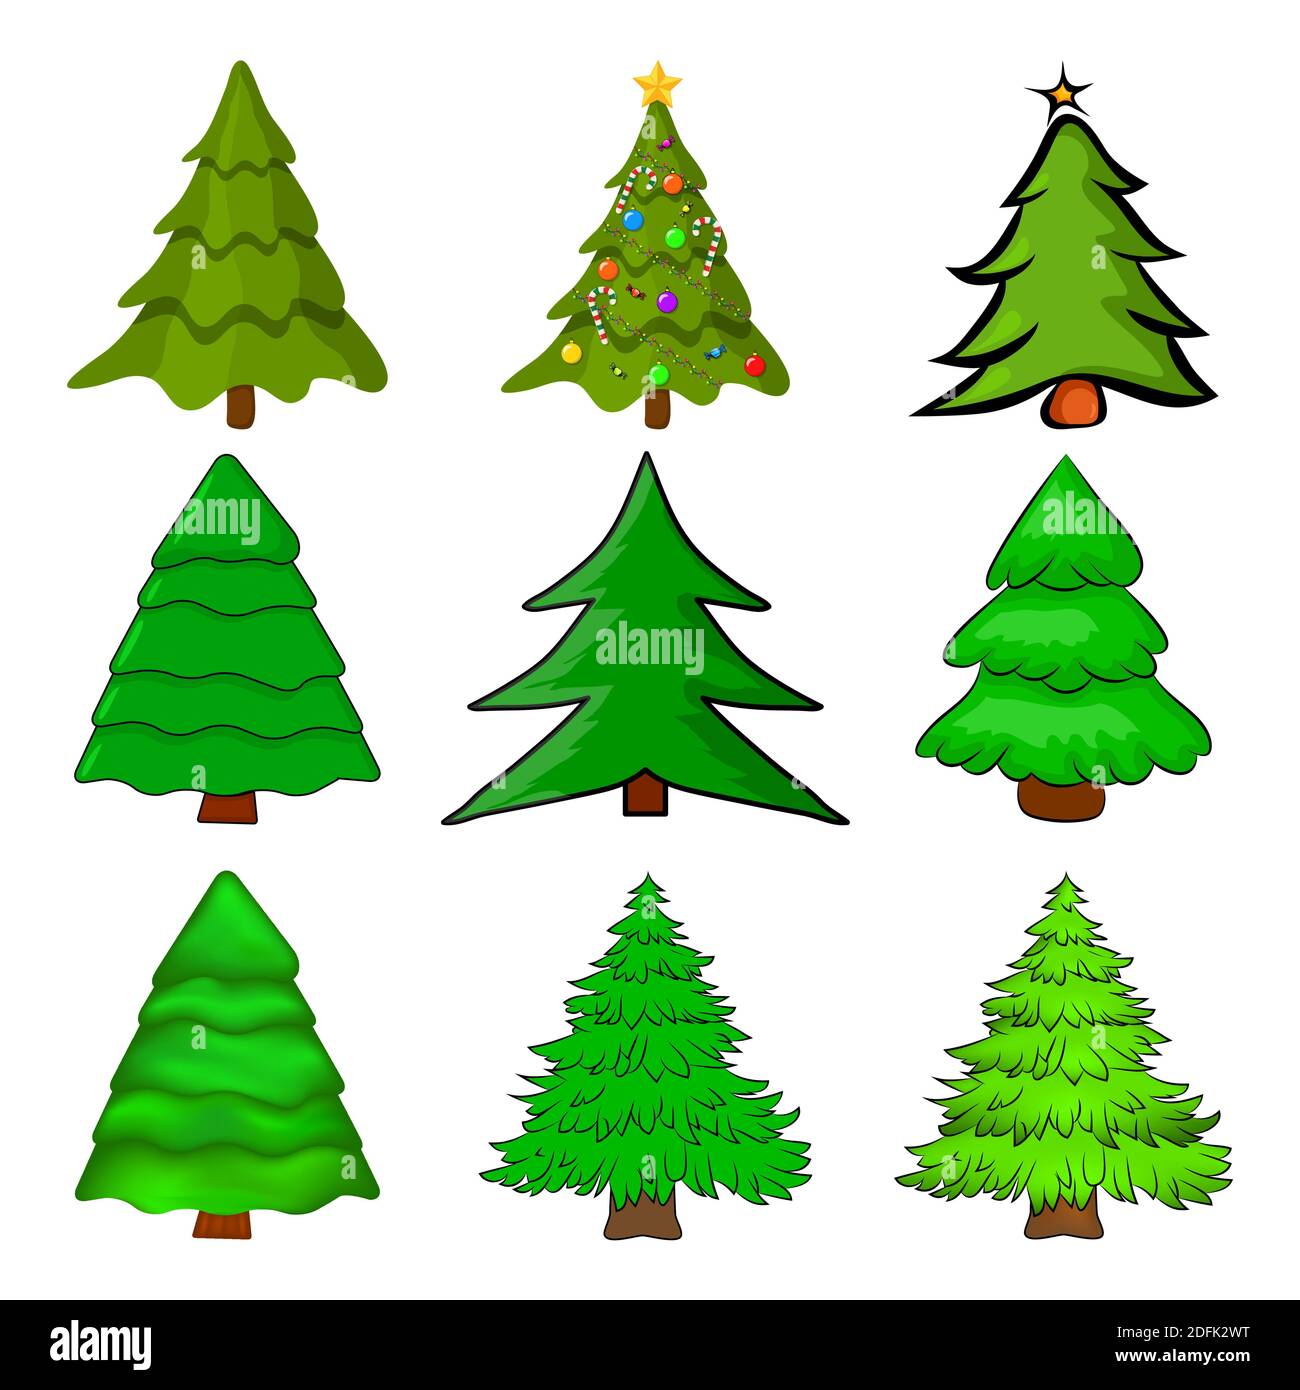 Weihnachtsbäume. Cartoon Tannenbaum Illustration isoliert auf weißem Hintergrund. Kollektion von saisonalen Kiefer Design. Bunte grüne Kiefern für Weihnachten ca. Stock Vektor